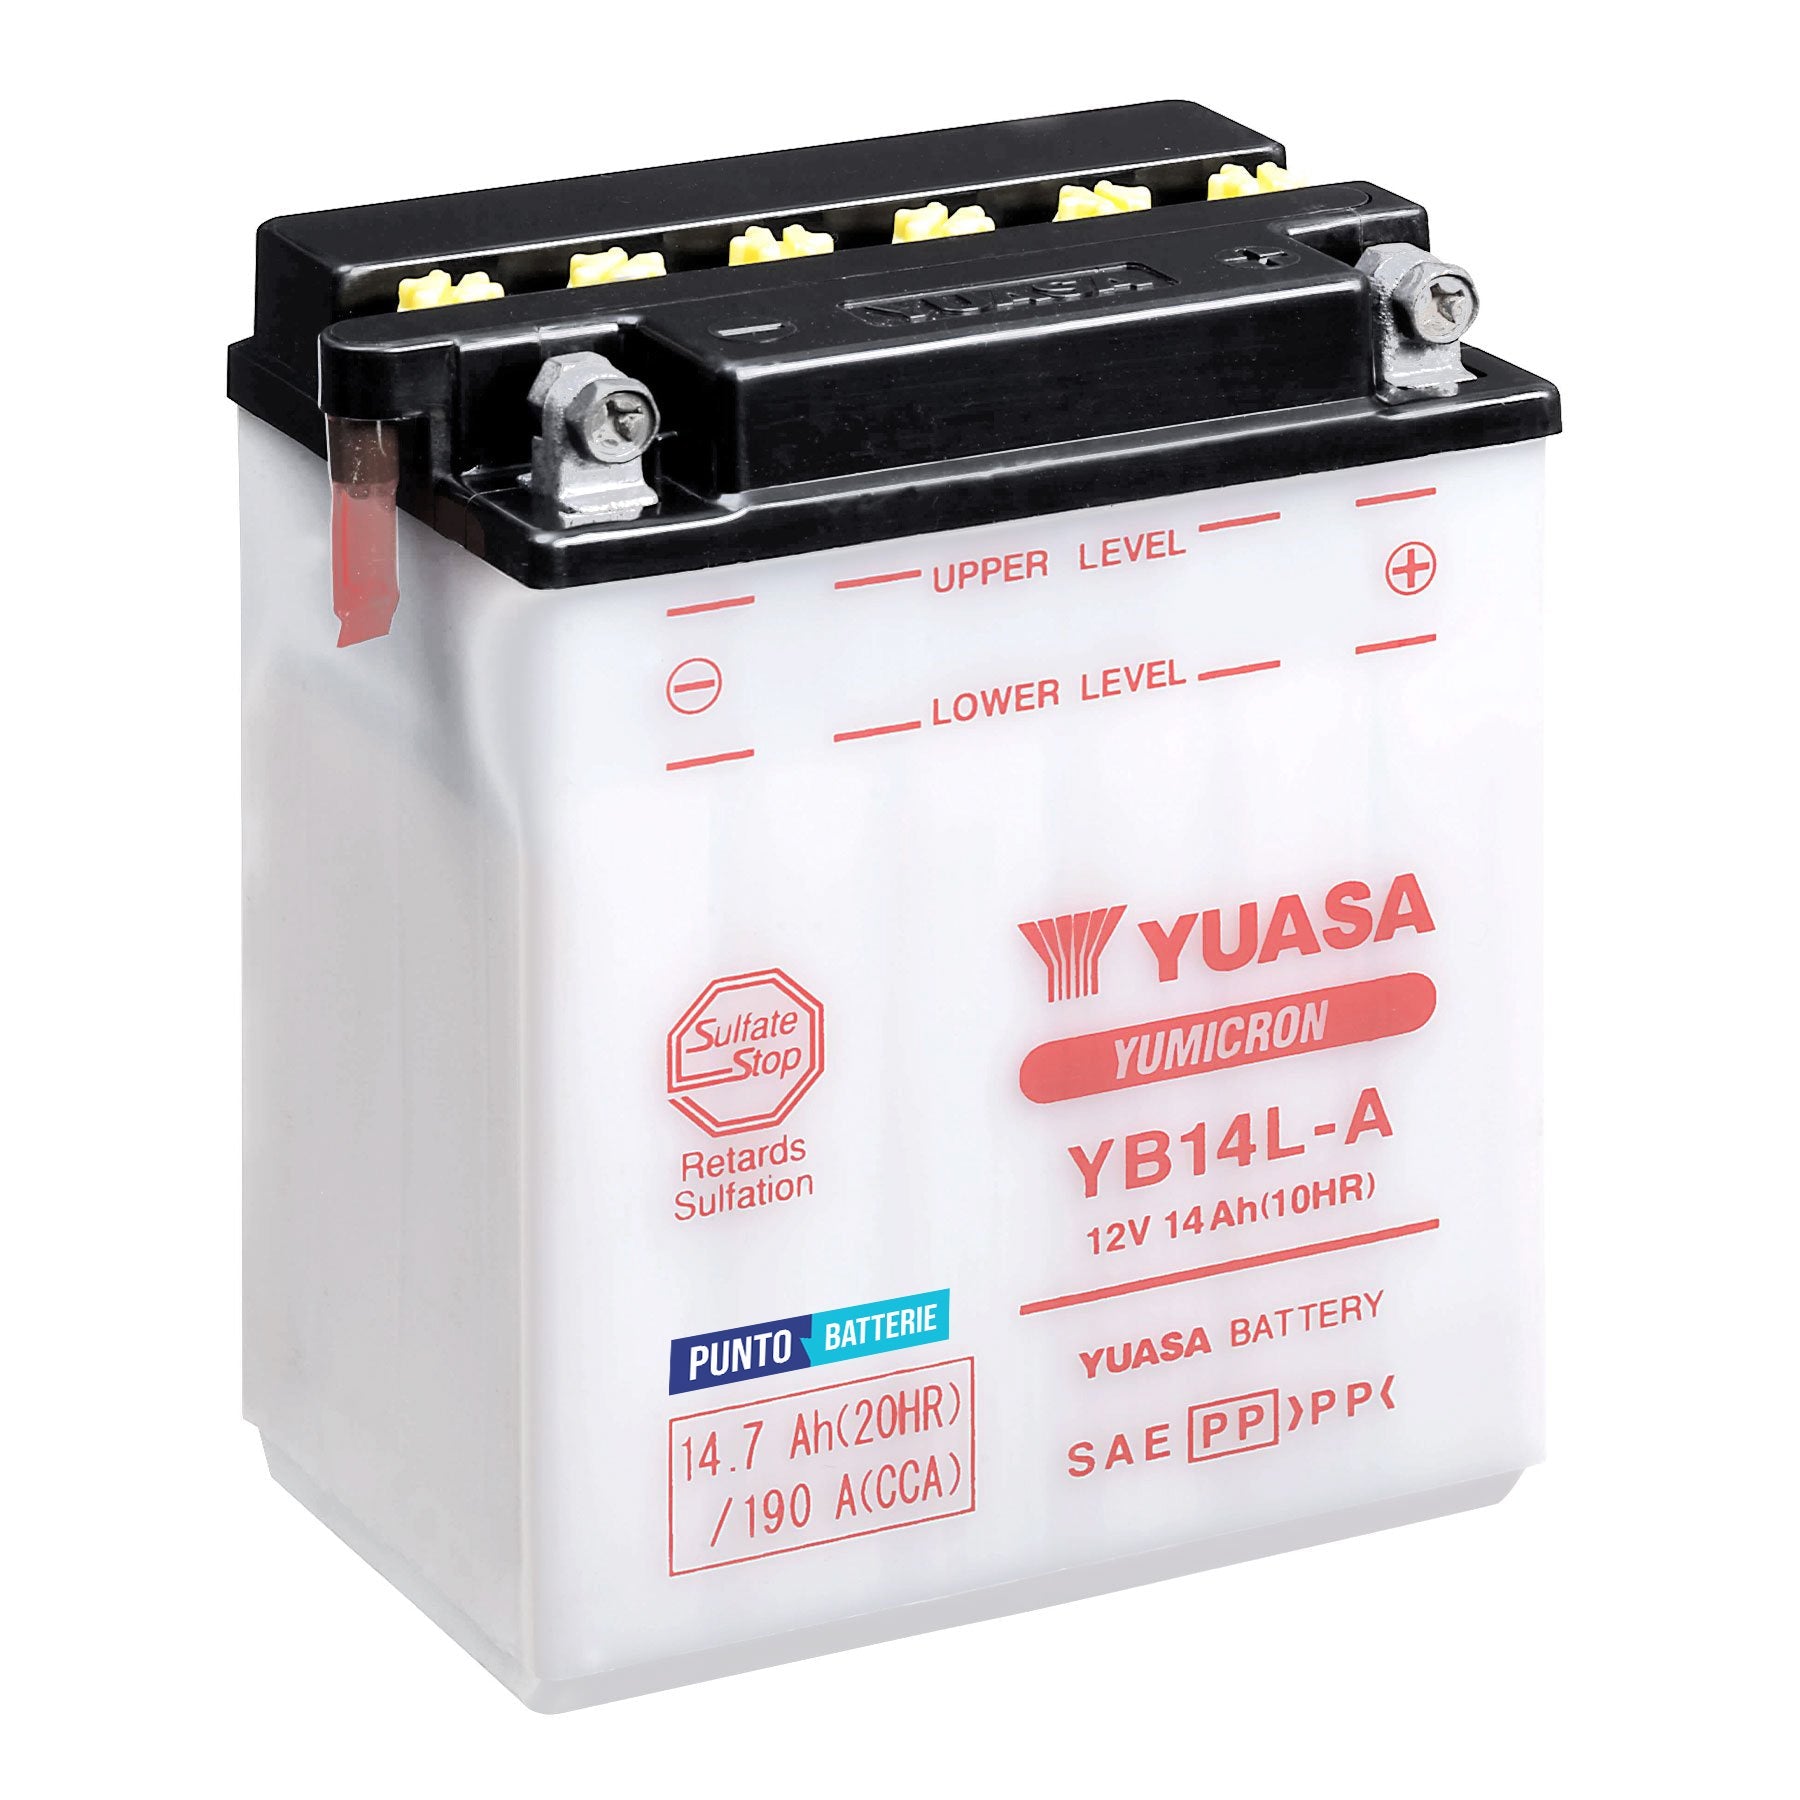 Batteria originale Yuasa YuMicron YB14L-A, dimensioni 134 x 89 x 166, polo positivo a destra, 12 volt, 14 amperora, 190 ampere. Batteria per moto, scooter e powersport.